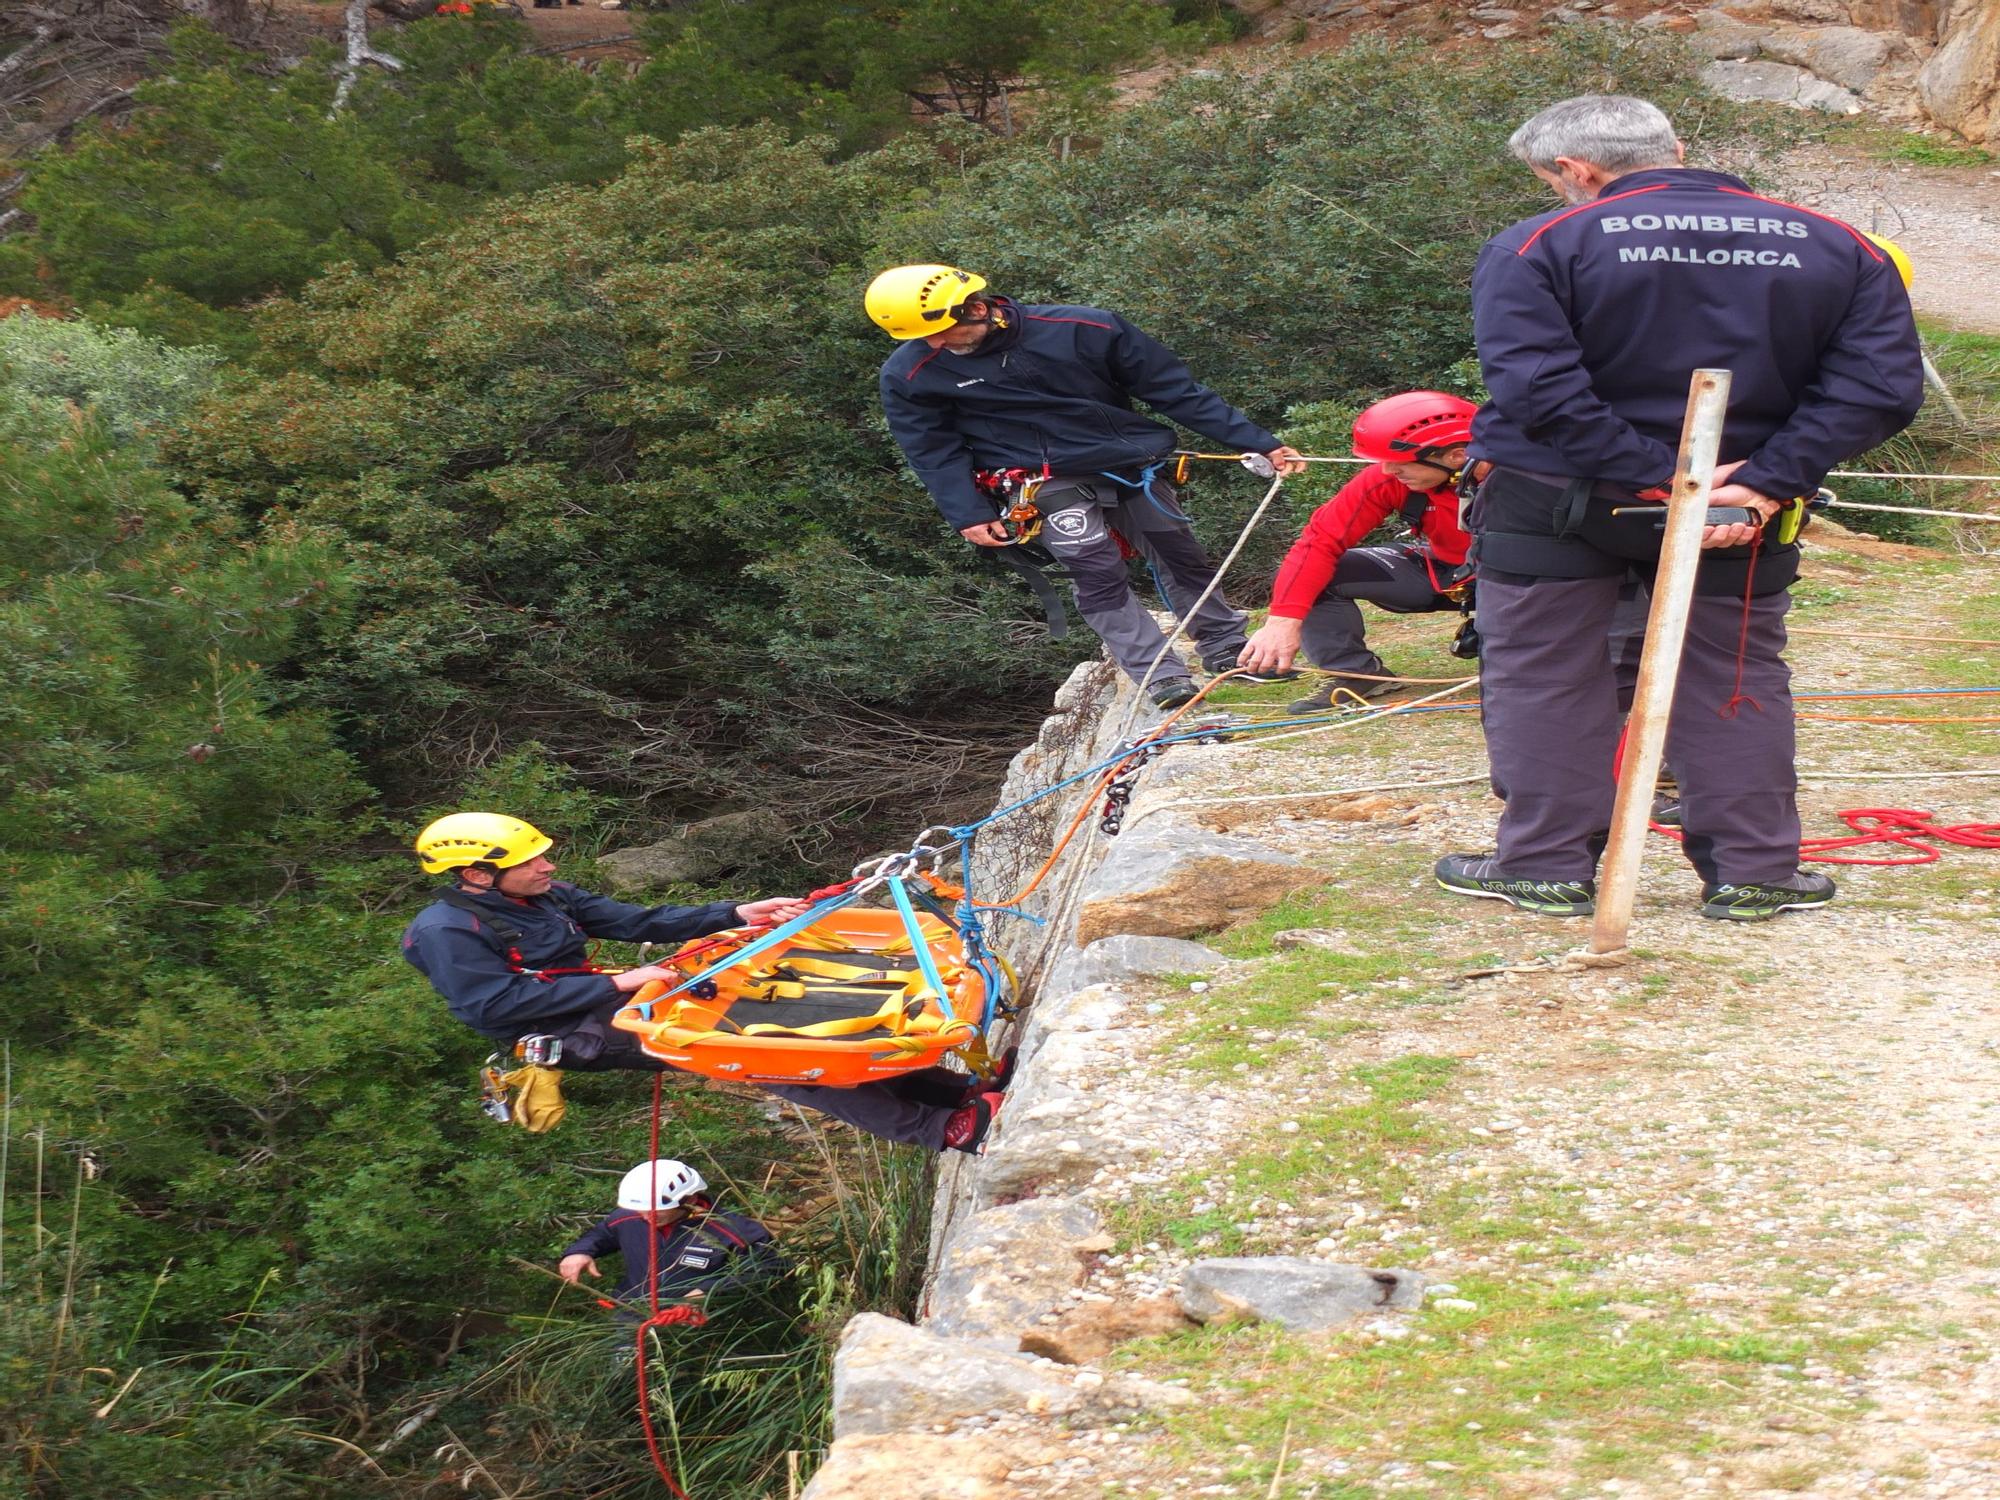 Simulacro de rescate de montaña en Sóller